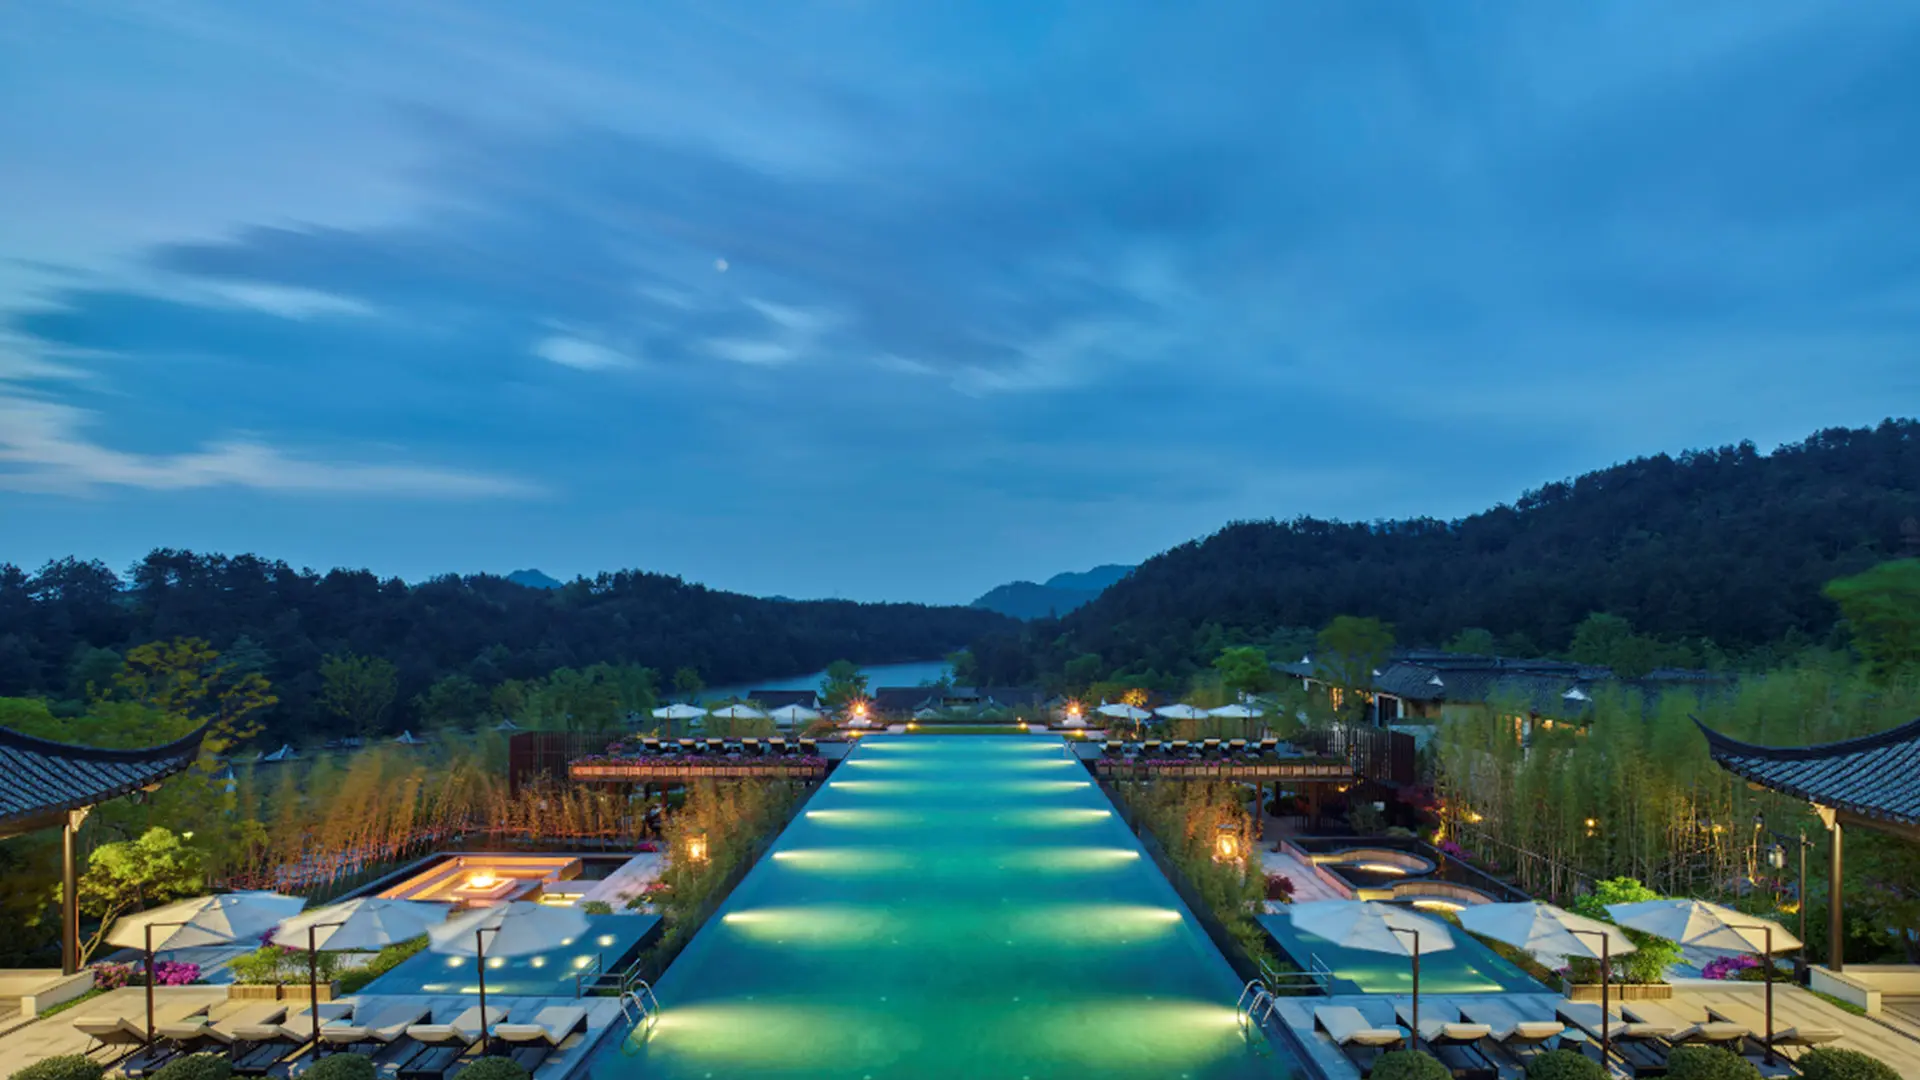 Hotels Resort & Facilities of Banyan Tree Anji China